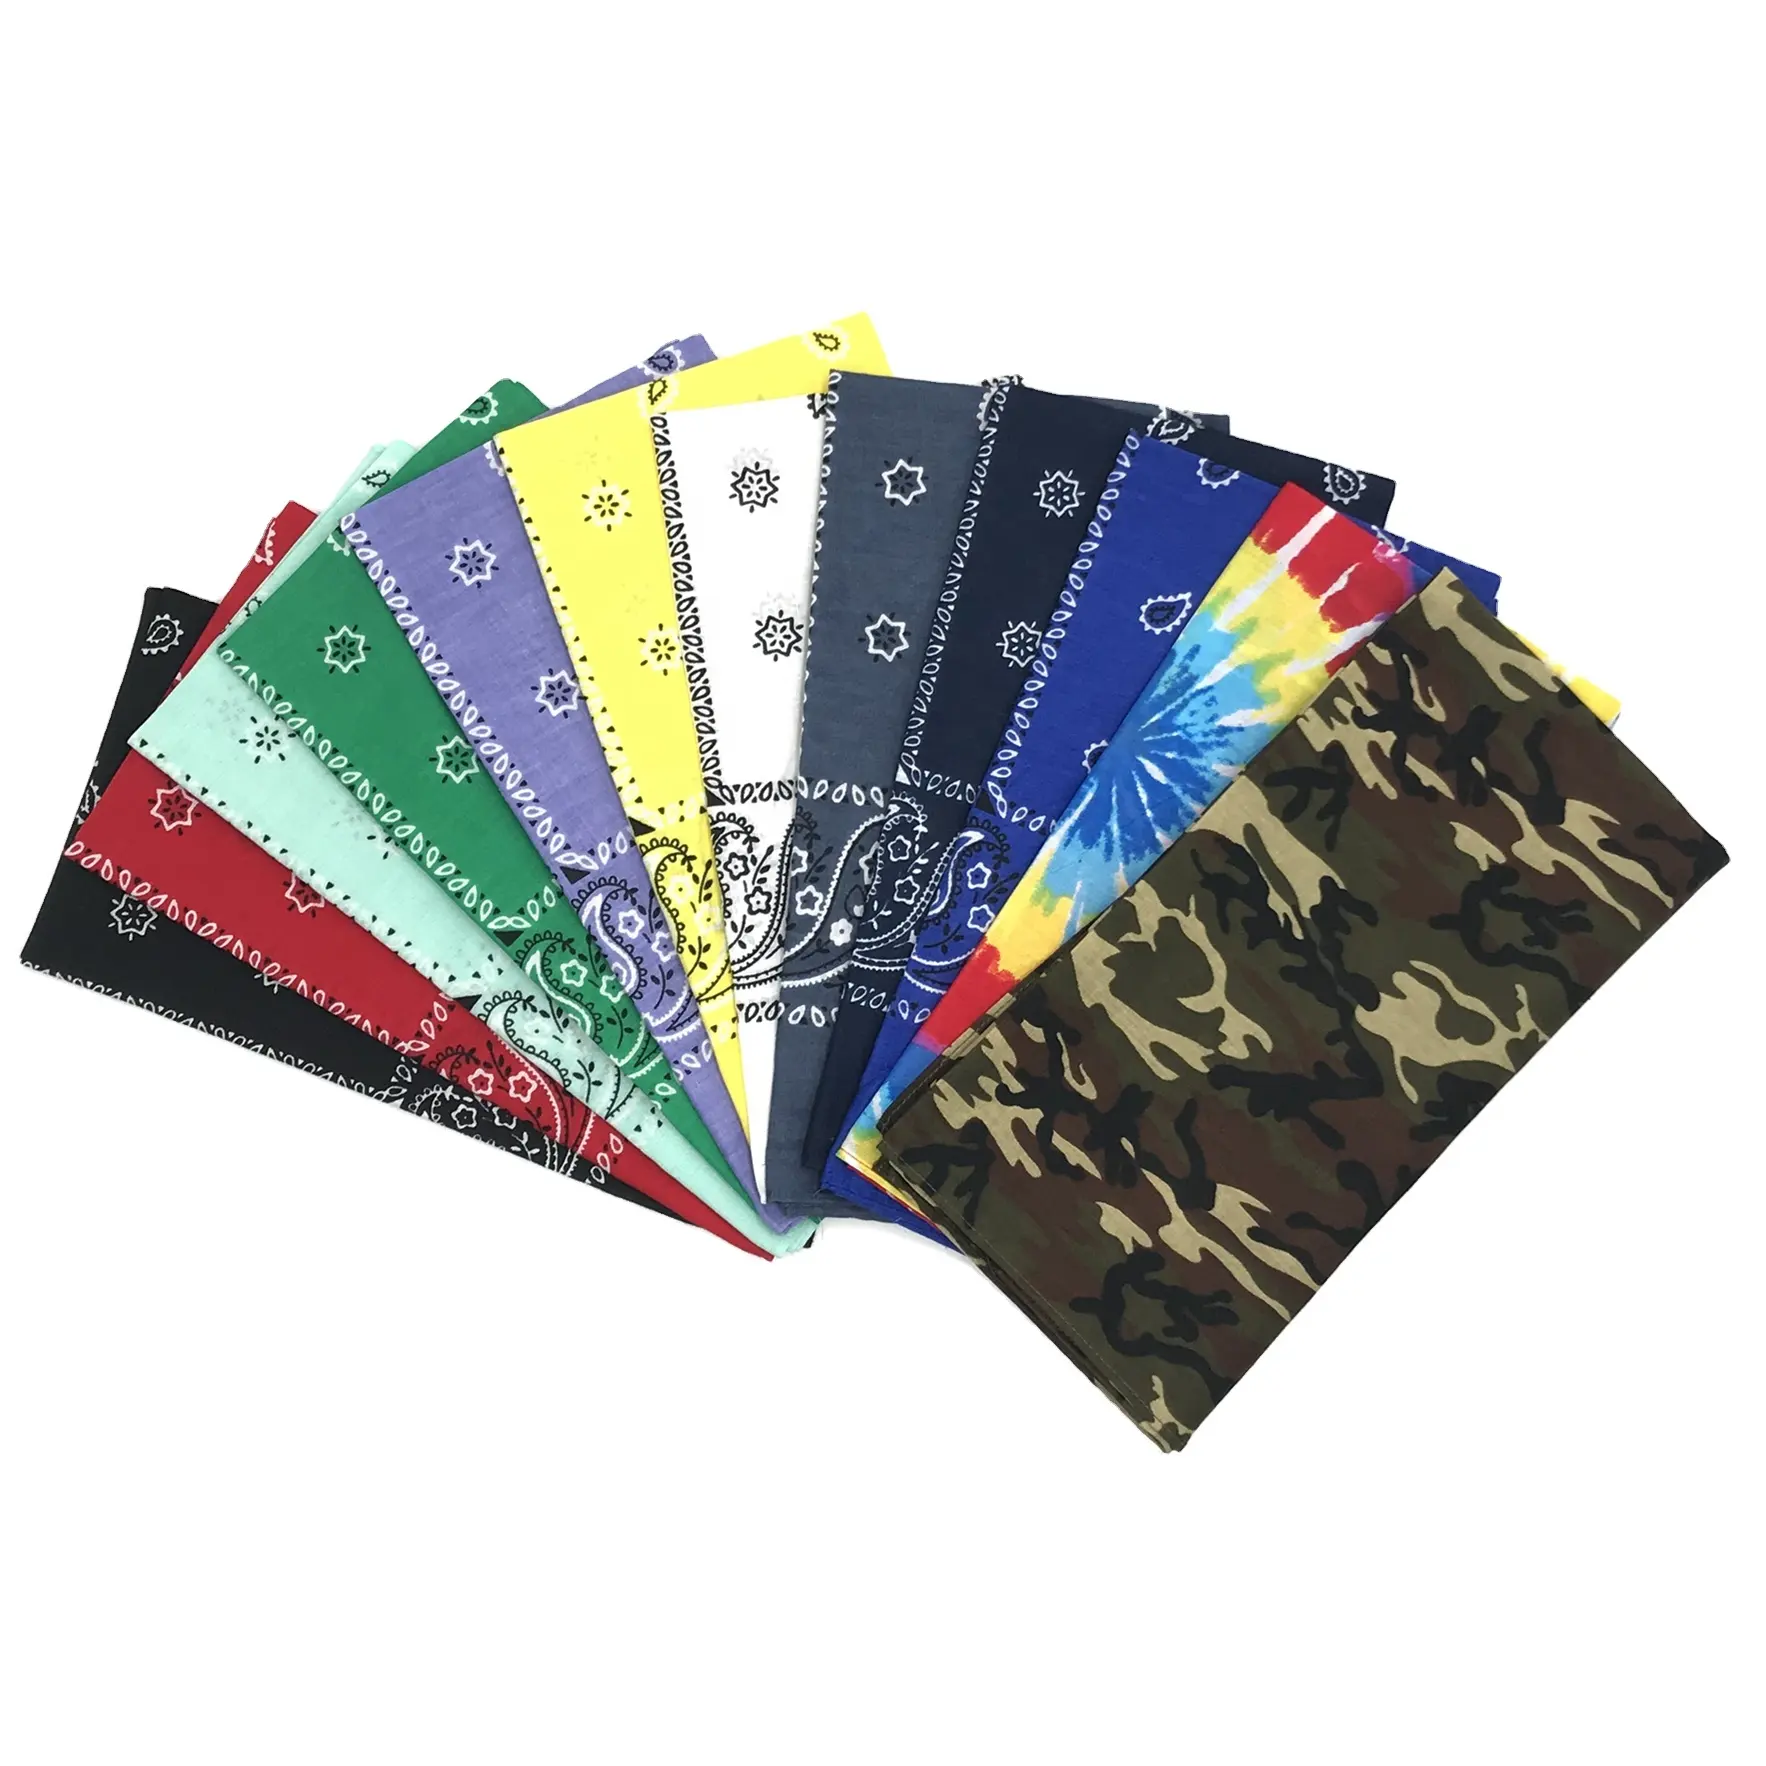 Moda 12 Paquete de algodón suave de las mujeres diadema estampado cuadrado tejido bufanda de los hombres ciclismo deporte al aire libre de superior empate tinte Bandana